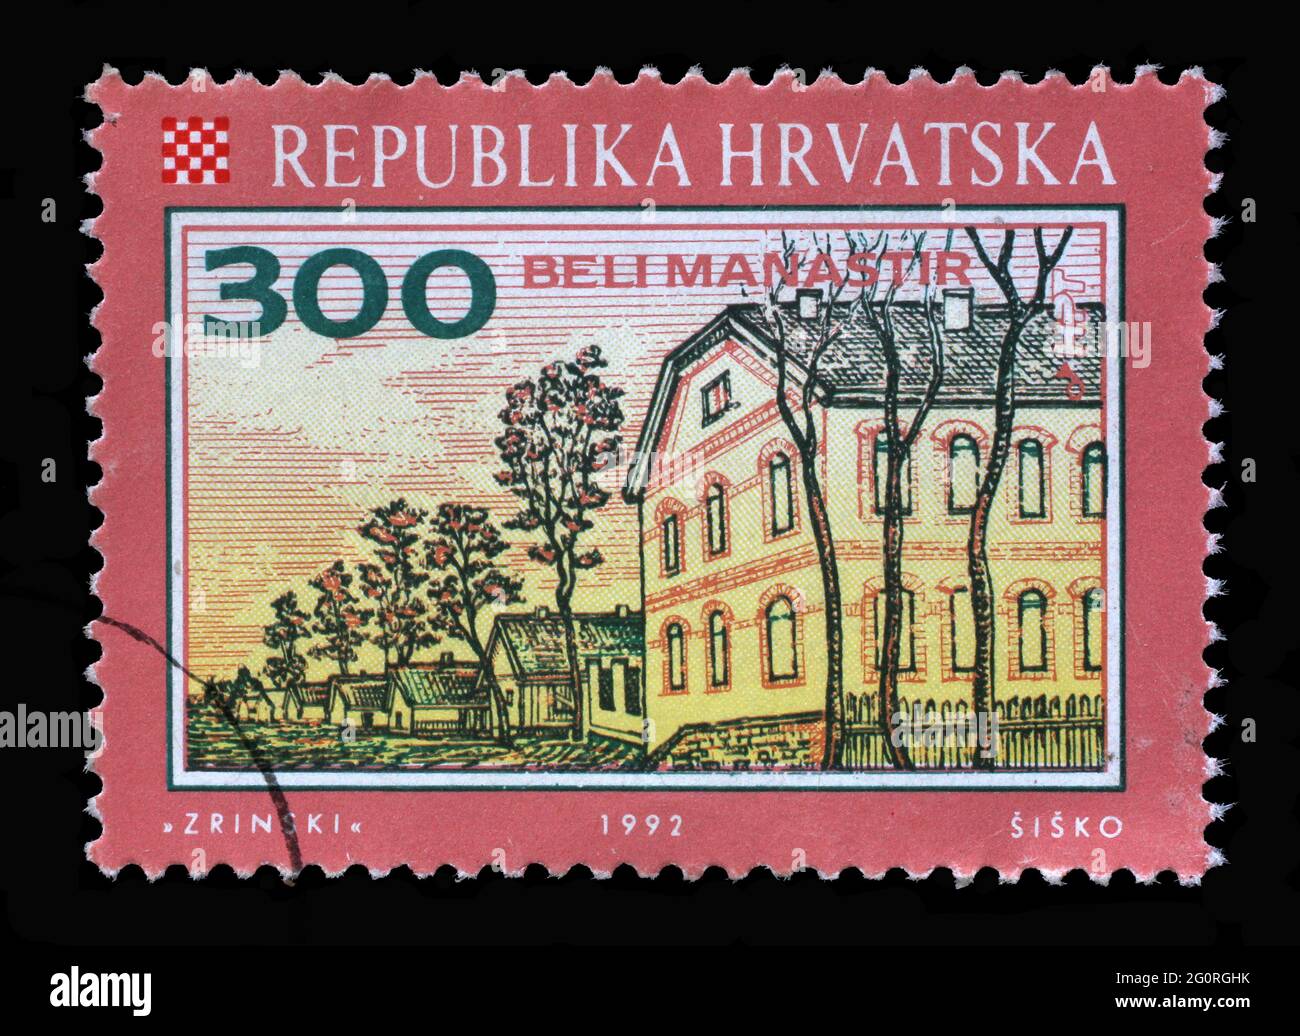 Un timbre imprimé en Croatie montre Beli Manastir, Series Croate Towns, vers 1992 Banque D'Images